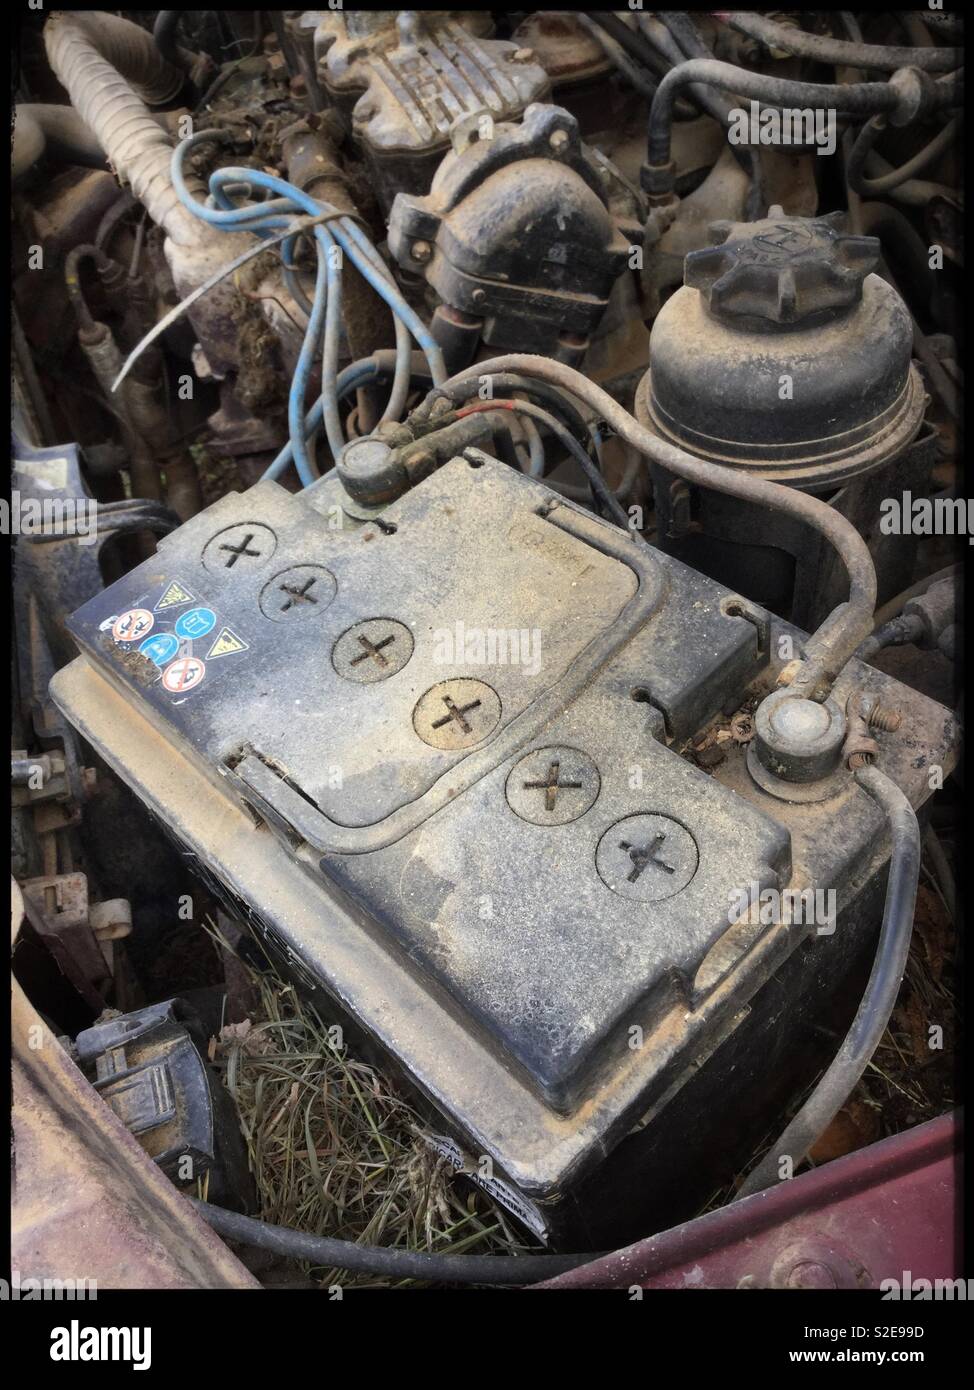 Abandoned Vauxhall Cavalier engine. Stock Photo